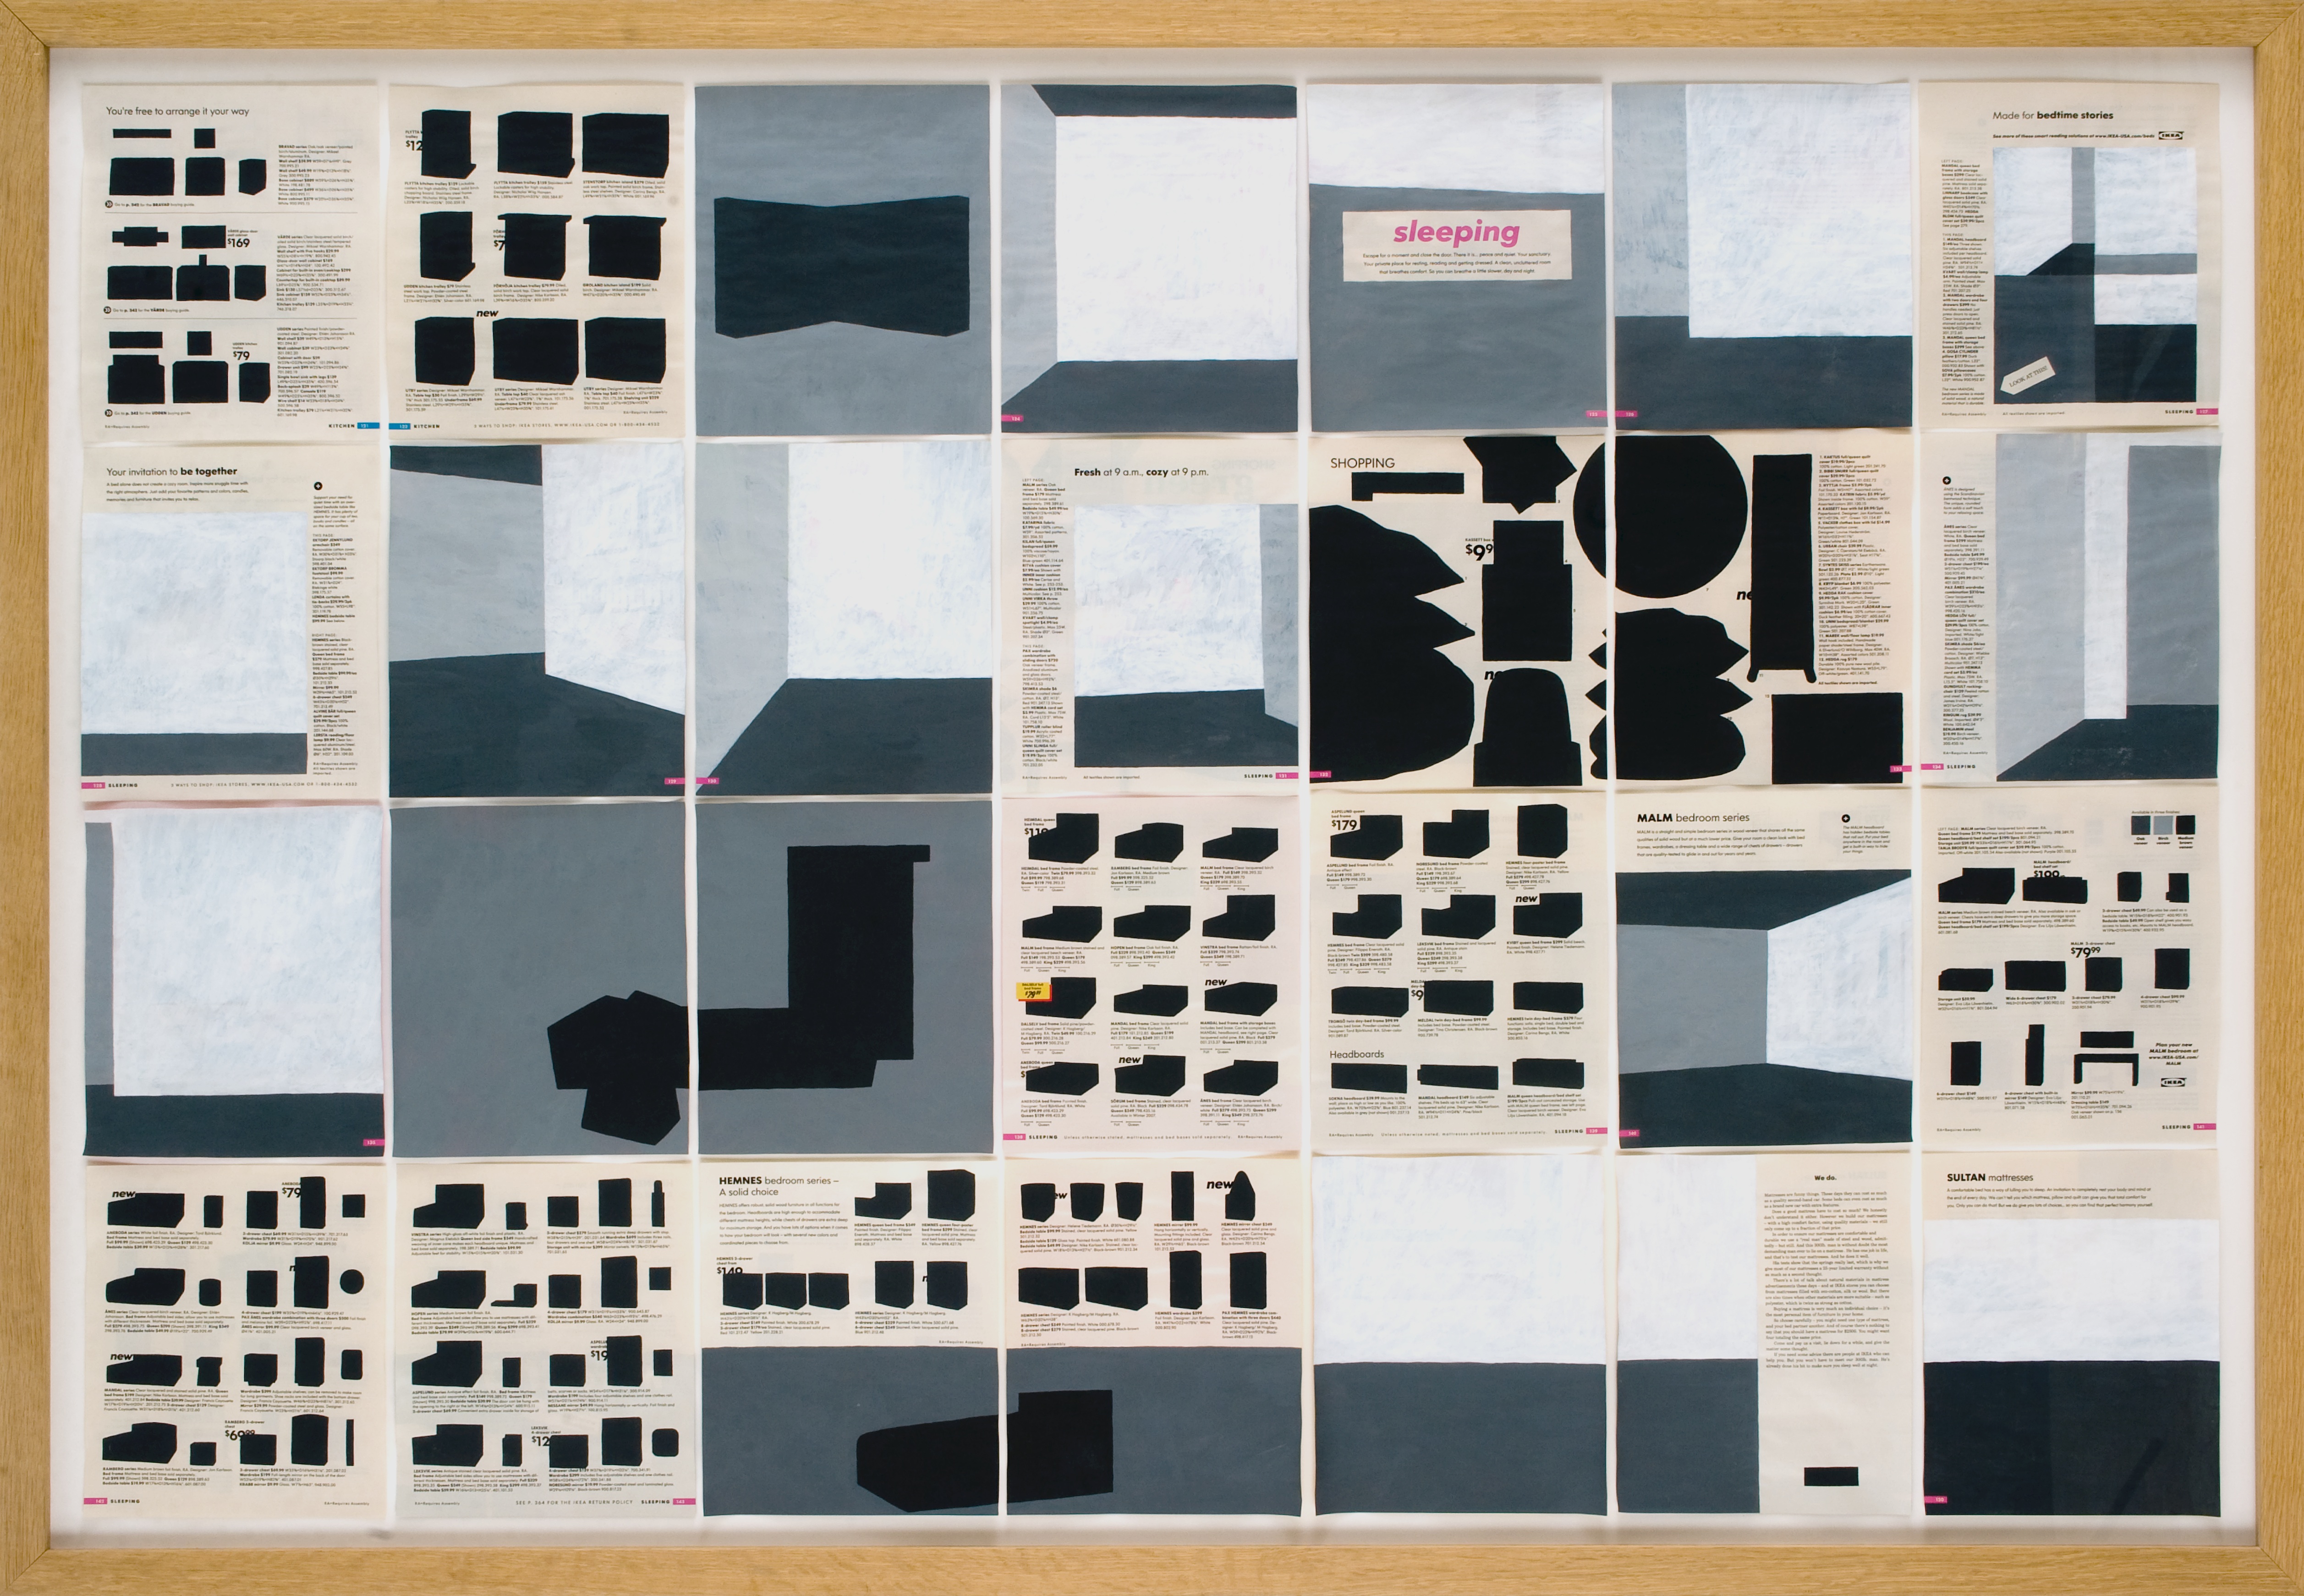 Jochen Gerner, n°5, Sleeping, 2008, Série Home, Acrylique sur papier imprimé, 100 x 144 cm avec cadre, courtesy galerie anne barrault